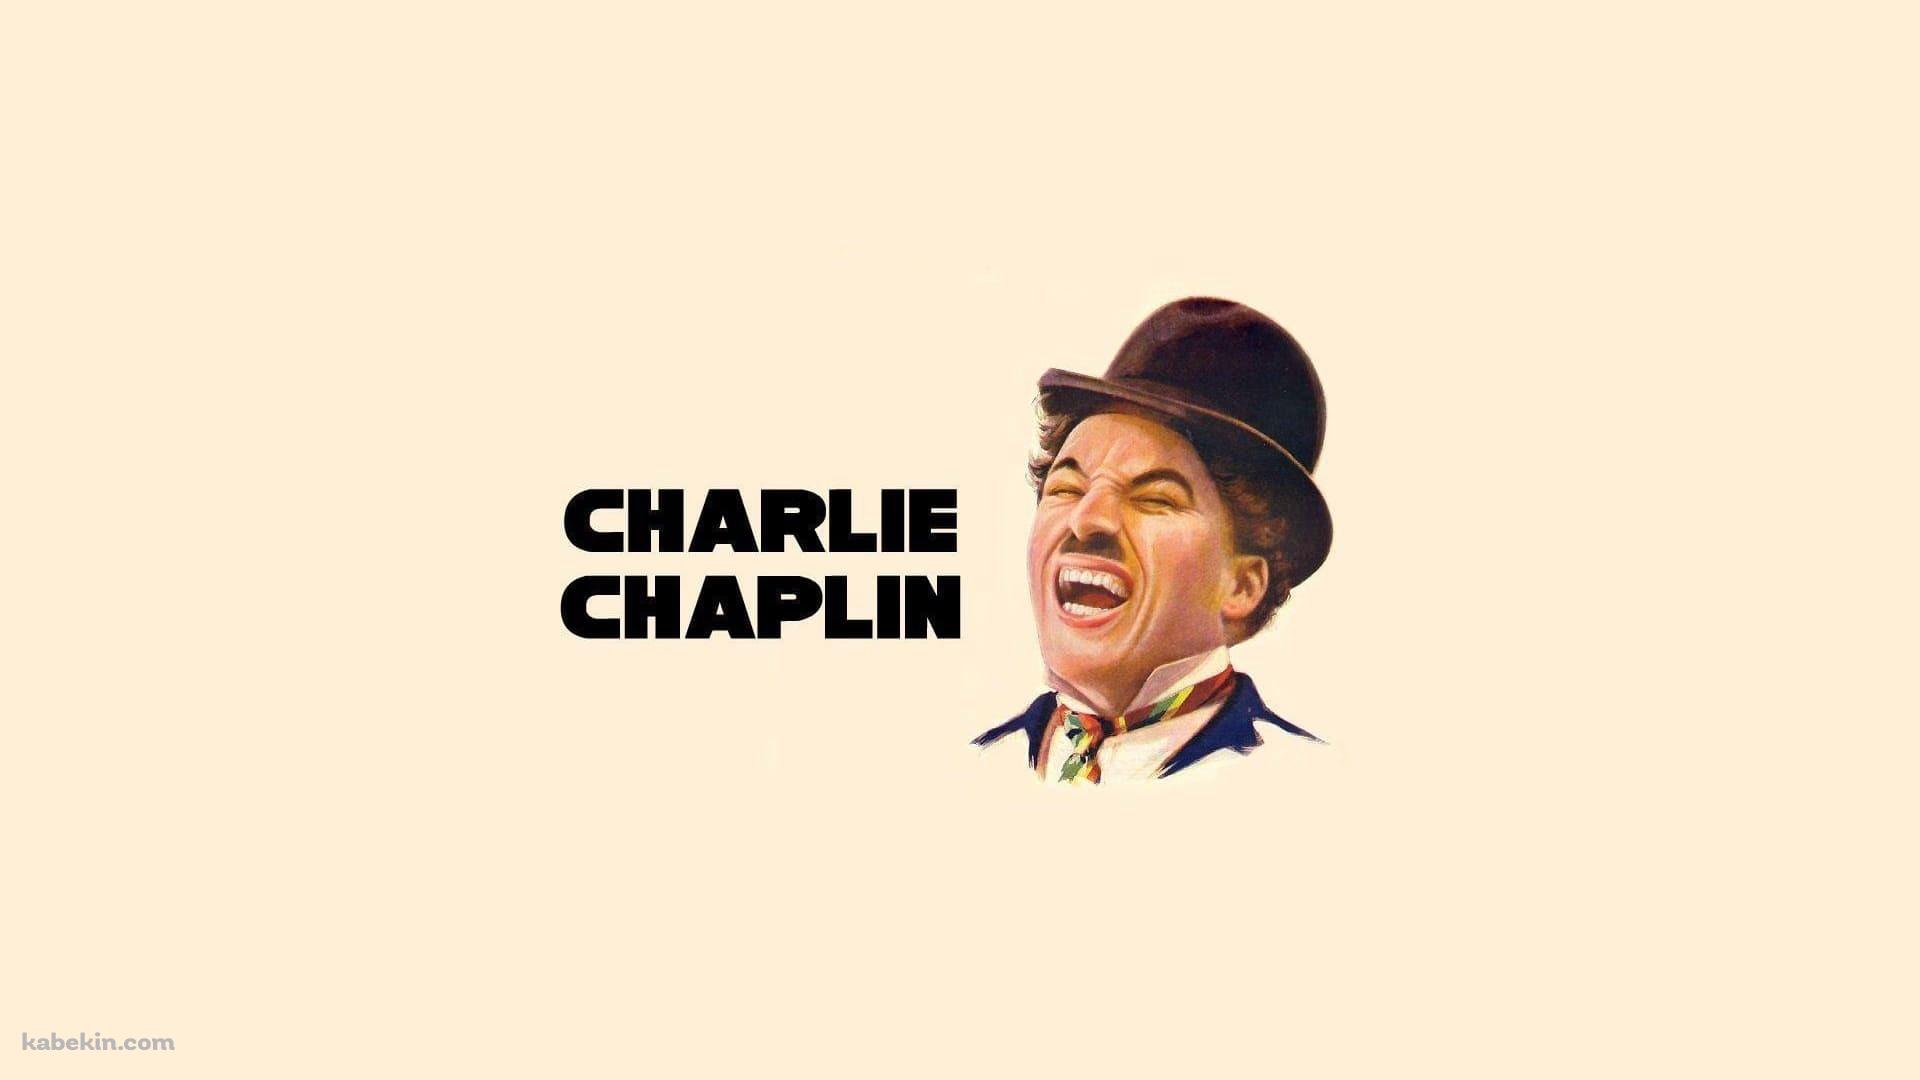 チャールズ・チャップリン / コメディアン / 喜劇王の壁紙(1920px x 1080px) 高画質 PC・デスクトップ用